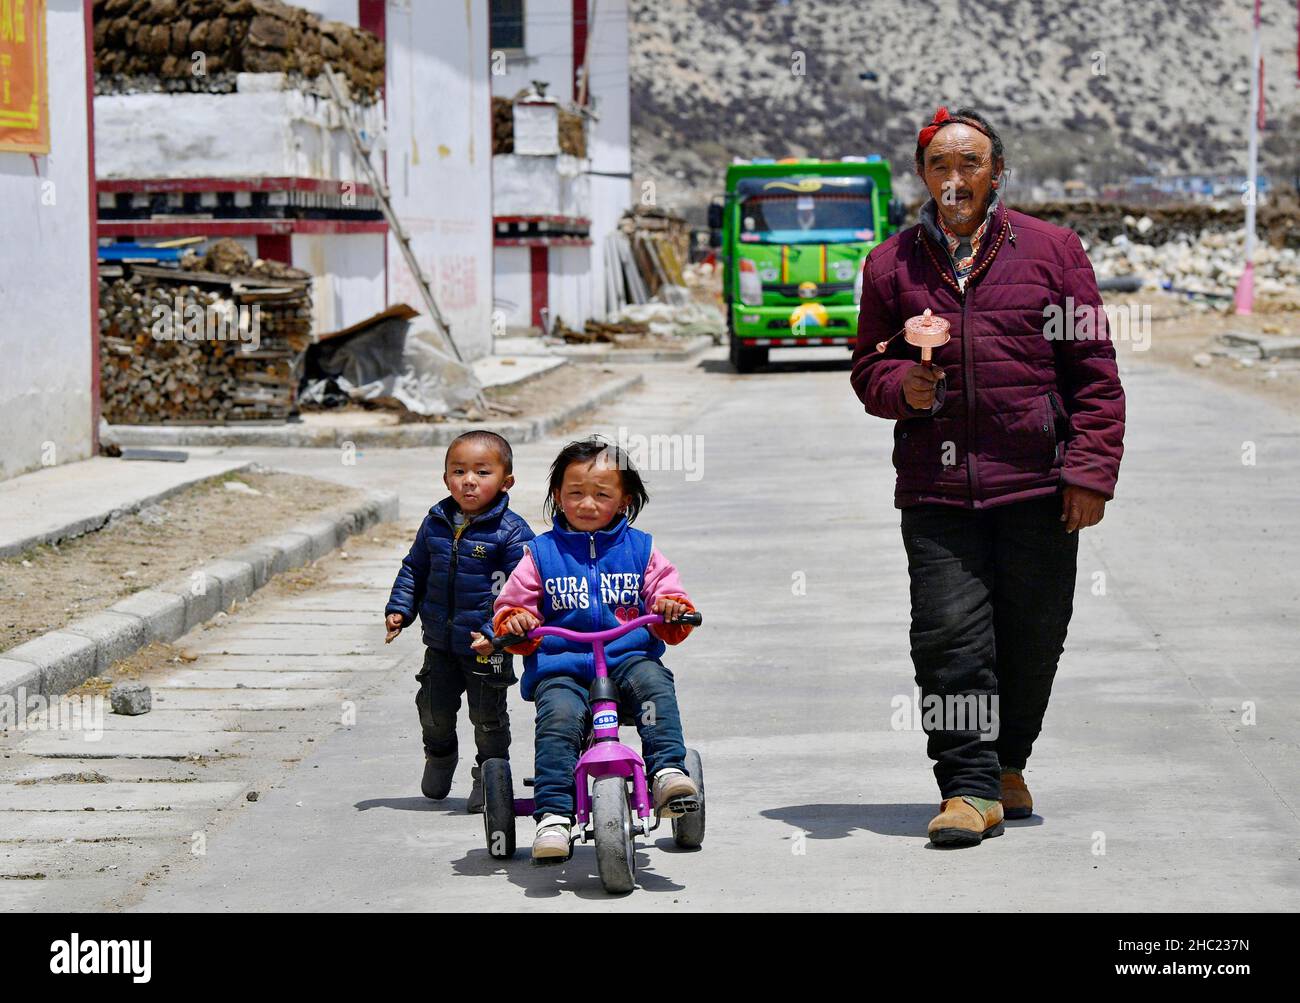 (211218) -- LHASA, 18 de diciembre de 2021 (Xinhua) -- Losang Dorje camina con sus bisnietos en Xigaze, Región Autónoma del Tíbet, al suroeste de China, 24 de abril de 2021. Nacido en 1942, Losang Dorje fue un porteador de su propietario de serf, transfiriendo bienes como la sal. Caminaría 30 kilómetros mientras soportaba 50 kilogramos de mercancías y sería sometido a un choque si no llegase a tiempo.En 1959, se inició la reforma democrática y finalmente se abolió la servidumbre feudal en el Tíbet. Un millón de siervos y esclavos fueron emancipados. 'Después de la reforma democrática, mi familia recibió yaks. Y tengo un trabajo que traer Foto de stock